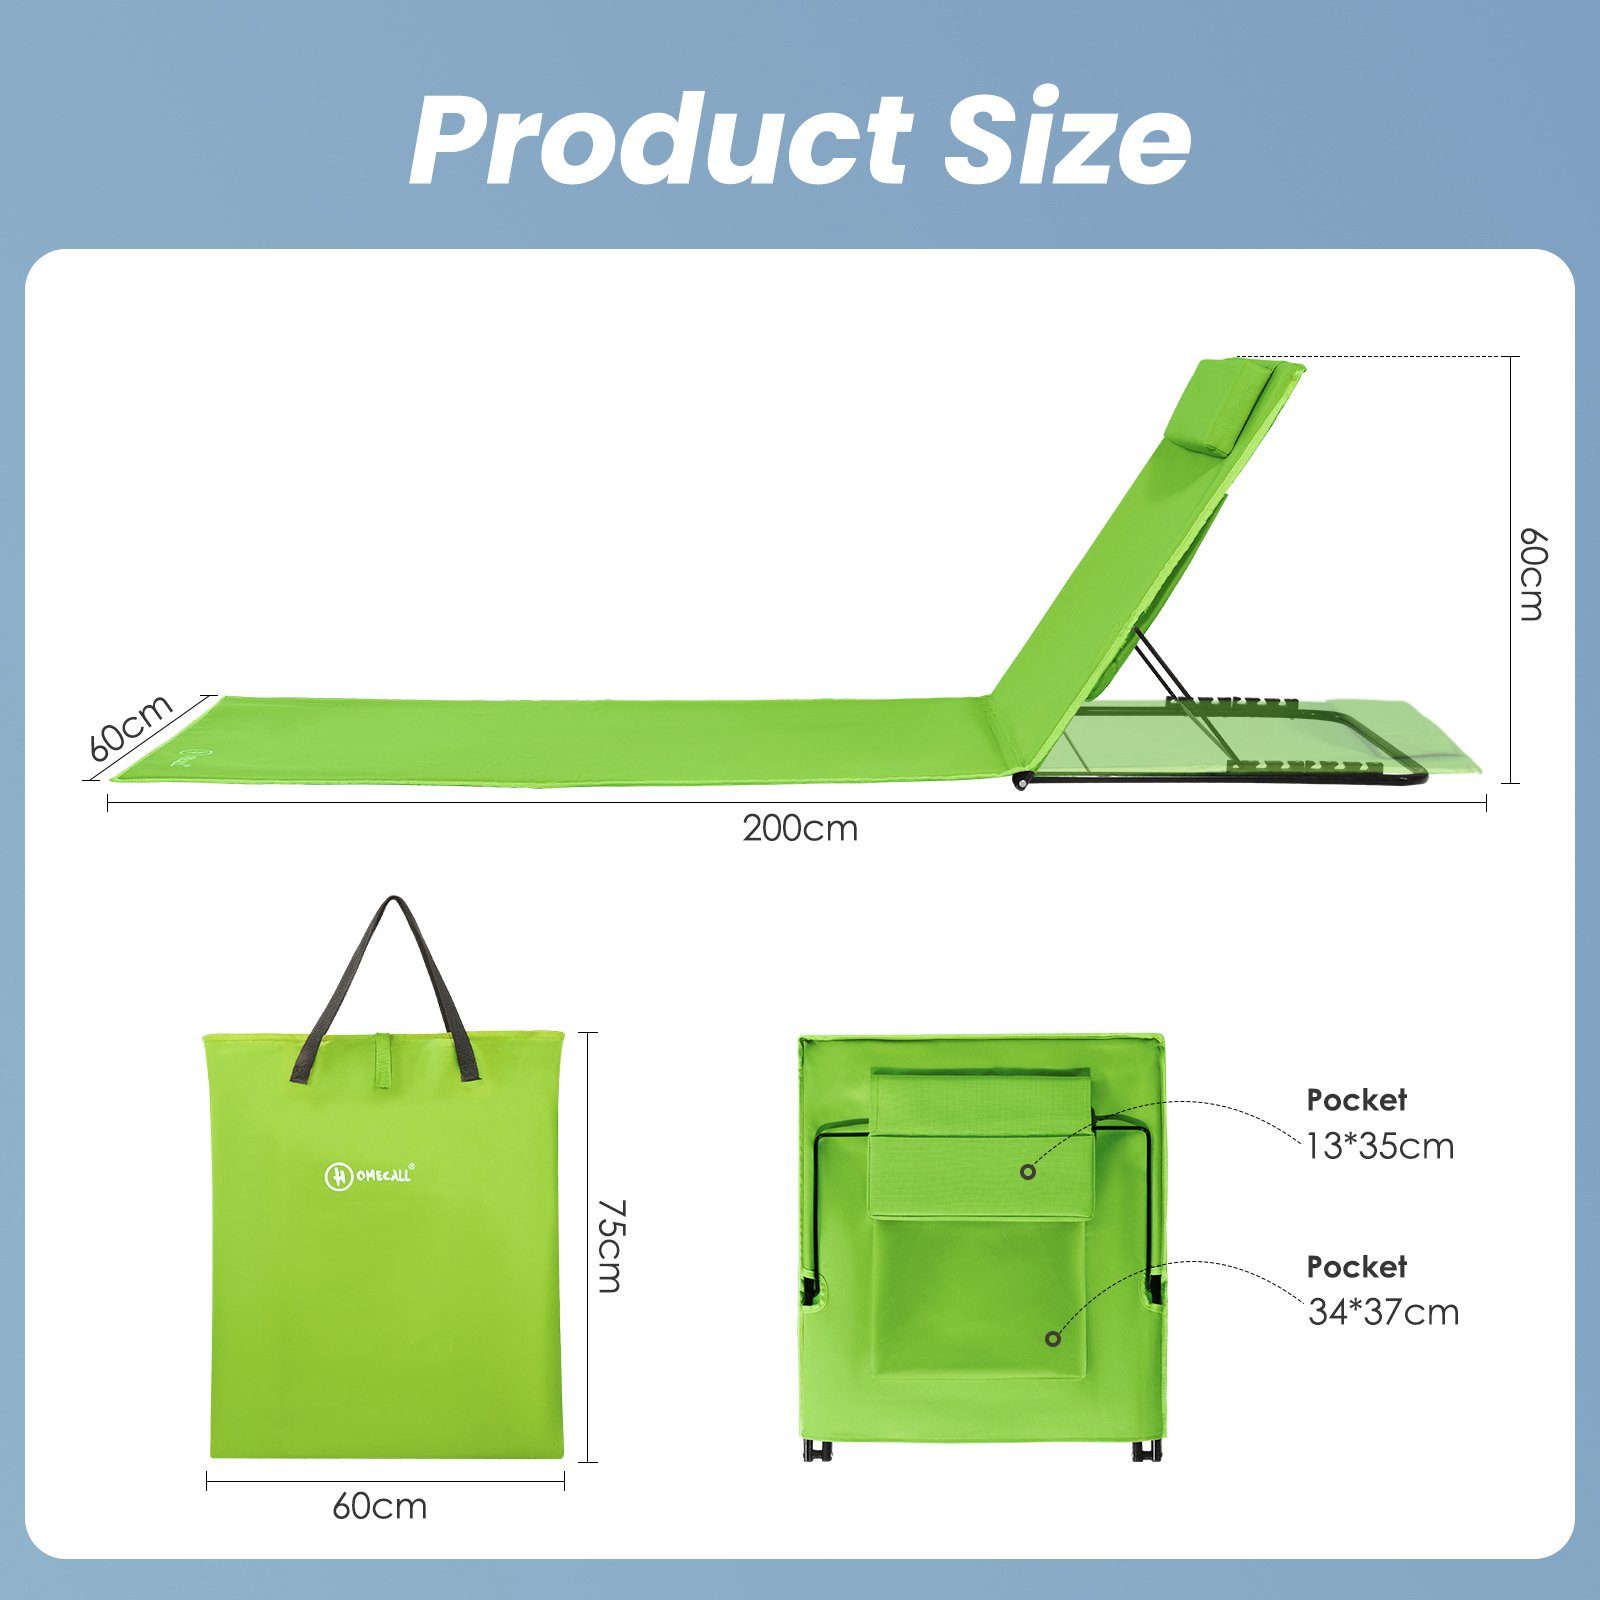 verstellbarer, leicht, 200x60cm HOMECALL Strandliege mit Strandmatte Strandtuch grün Textilene, 6 Schnell Gepolsterte Trocknet, Tasche, fach klappbar Liegestuhl